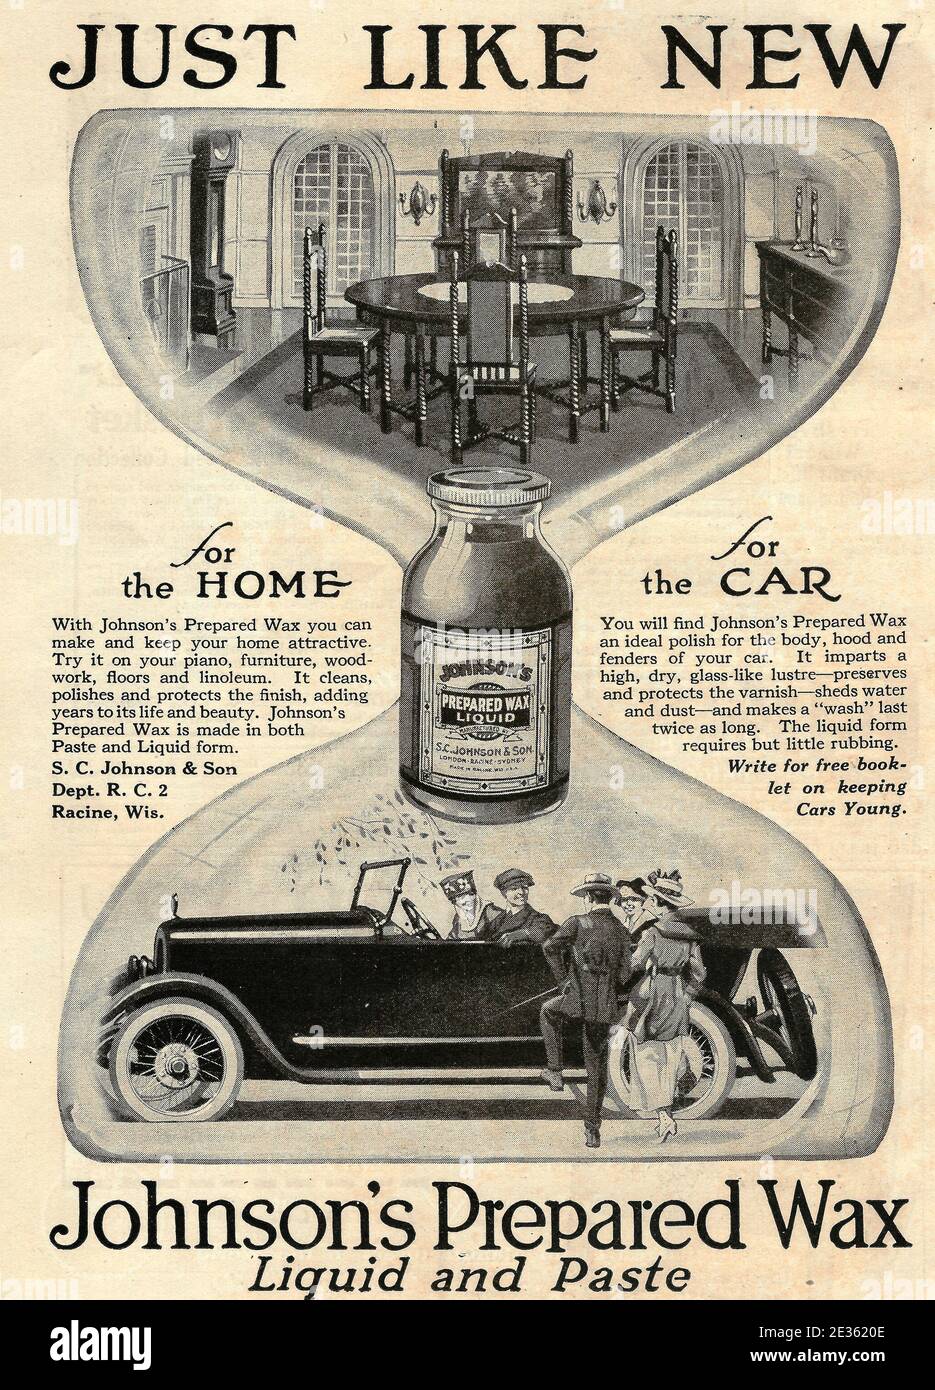 Appena come nuovo - Annuncio per la cera preparata di Johnson, liquido e pasta, circa 1919 Foto Stock